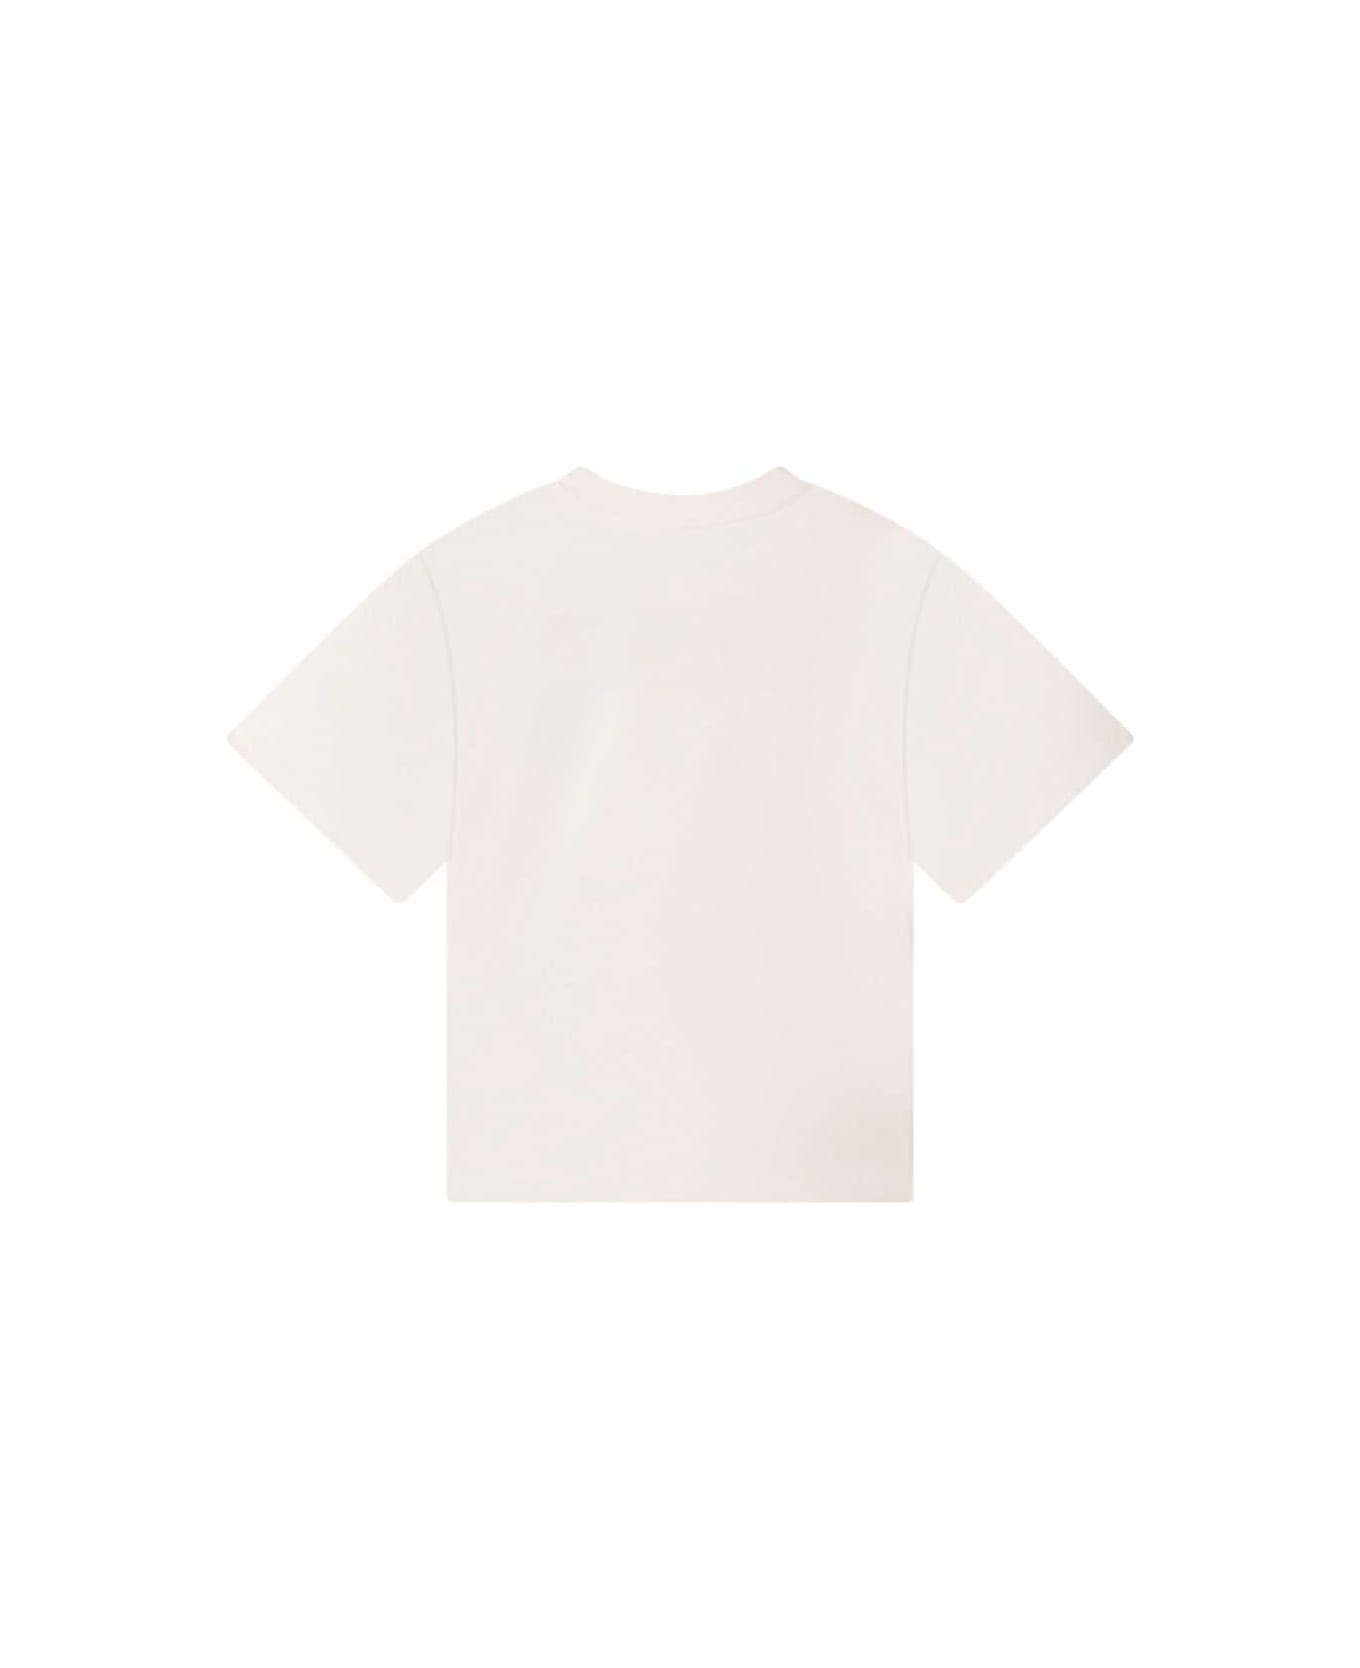 Kenzo Kids Kenzo T-shirt Bianca In Jersey Di Cotone Bambino - Bianco